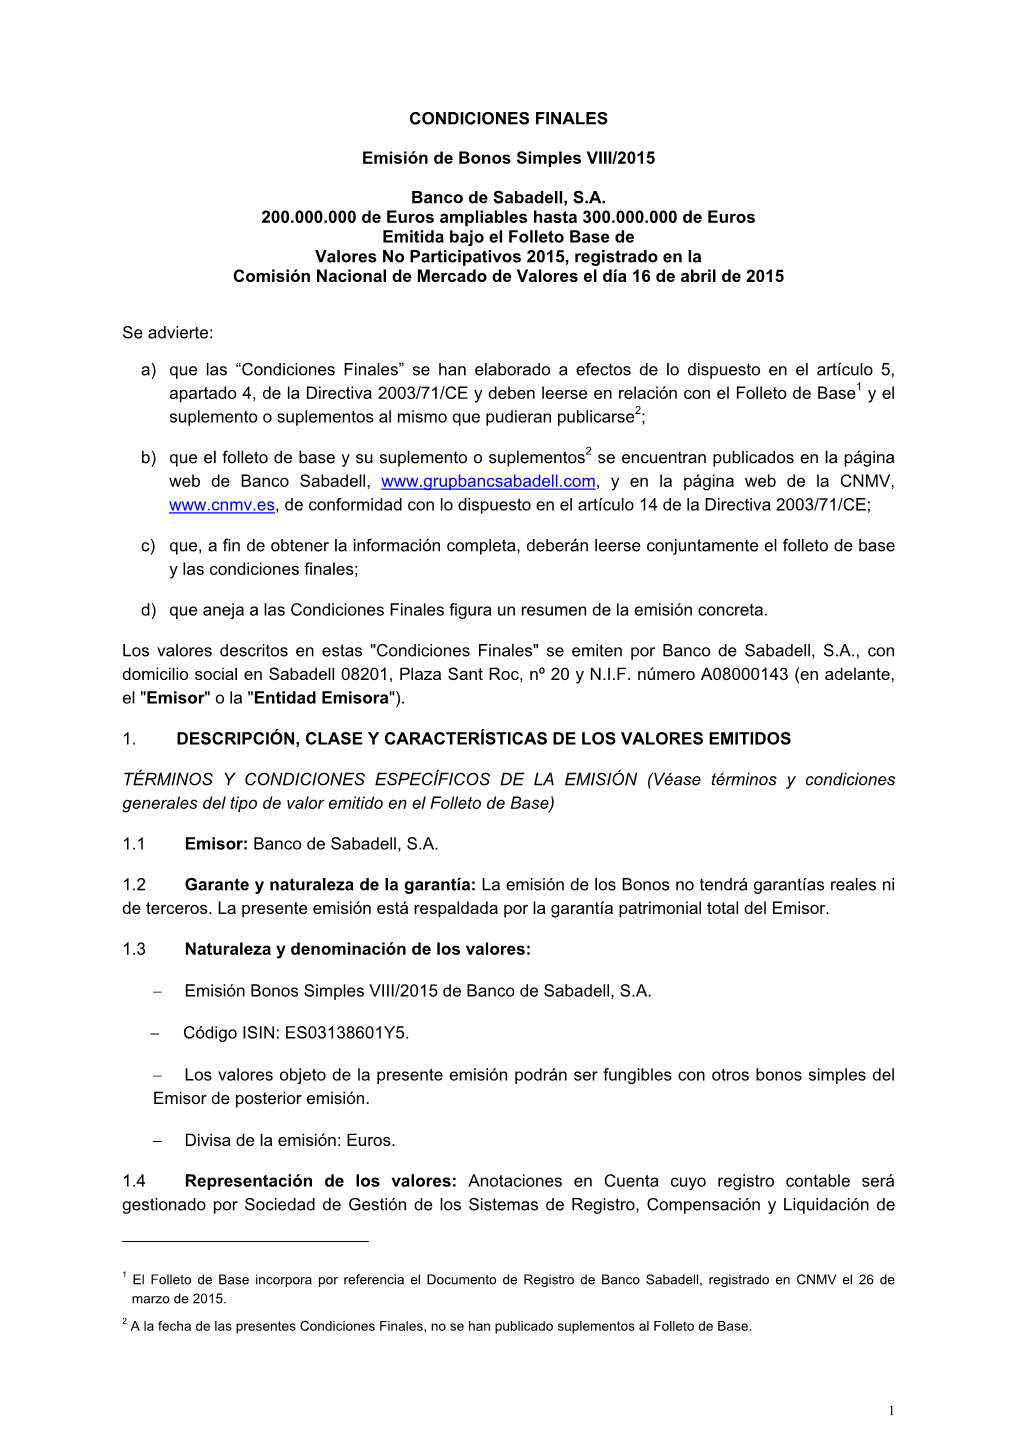 CONDICIONES FINALES Emisión De Bonos Simples VIII/2015 Banco De